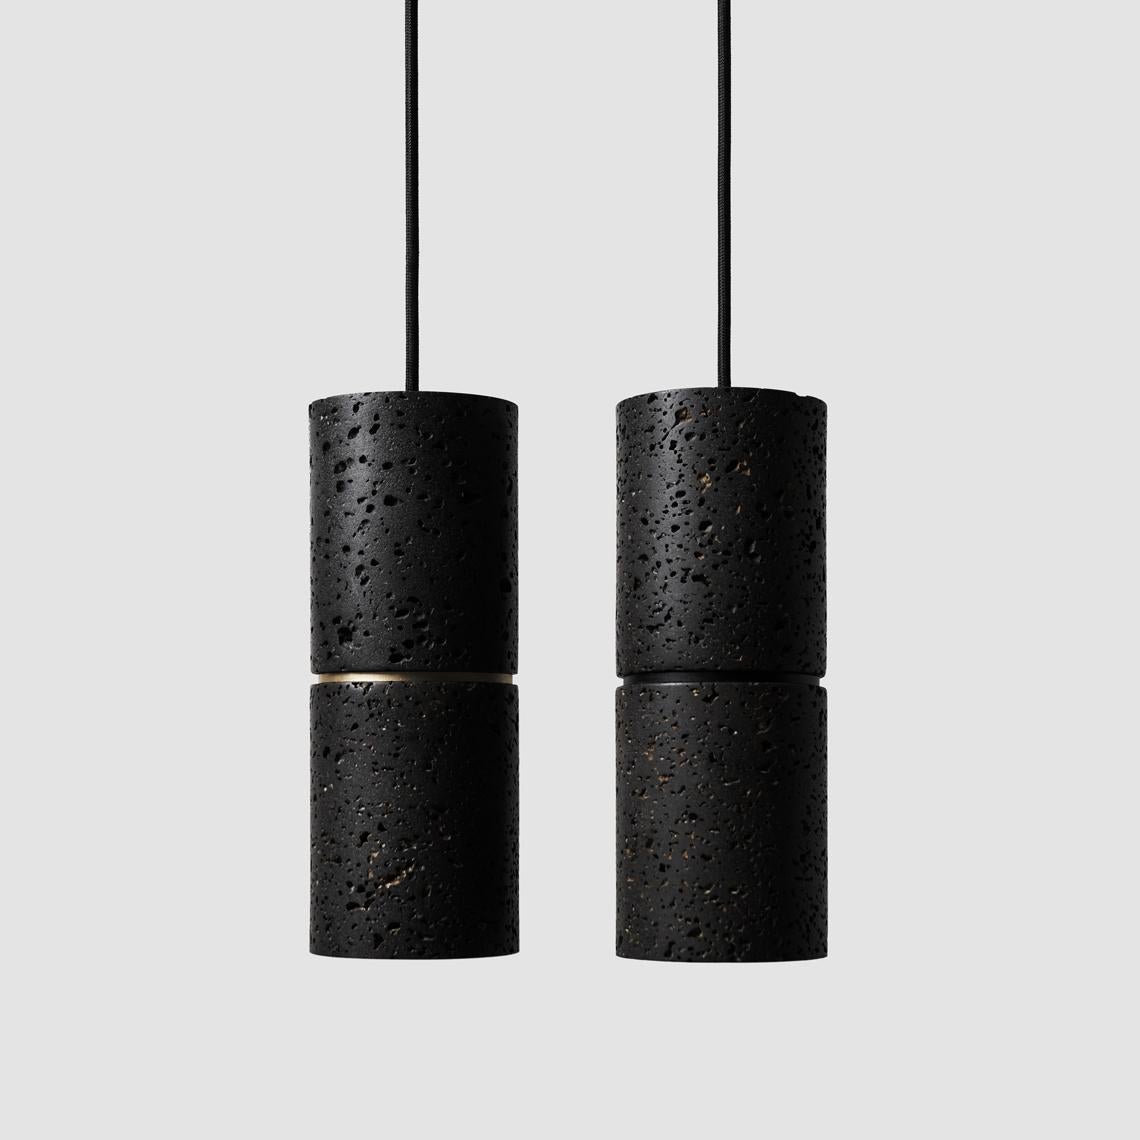 Lampe suspendue 'RI' par Buzao x Bentu Design. 
Versions en pierre de lave noire et en marbre blanc disponibles.

(vendu individuellement)

26,5 cm de haut ; 10 cm de diamètre
Fil : 2 mètres noir (réglable)

Finition en laiton (or) ou en aluminium